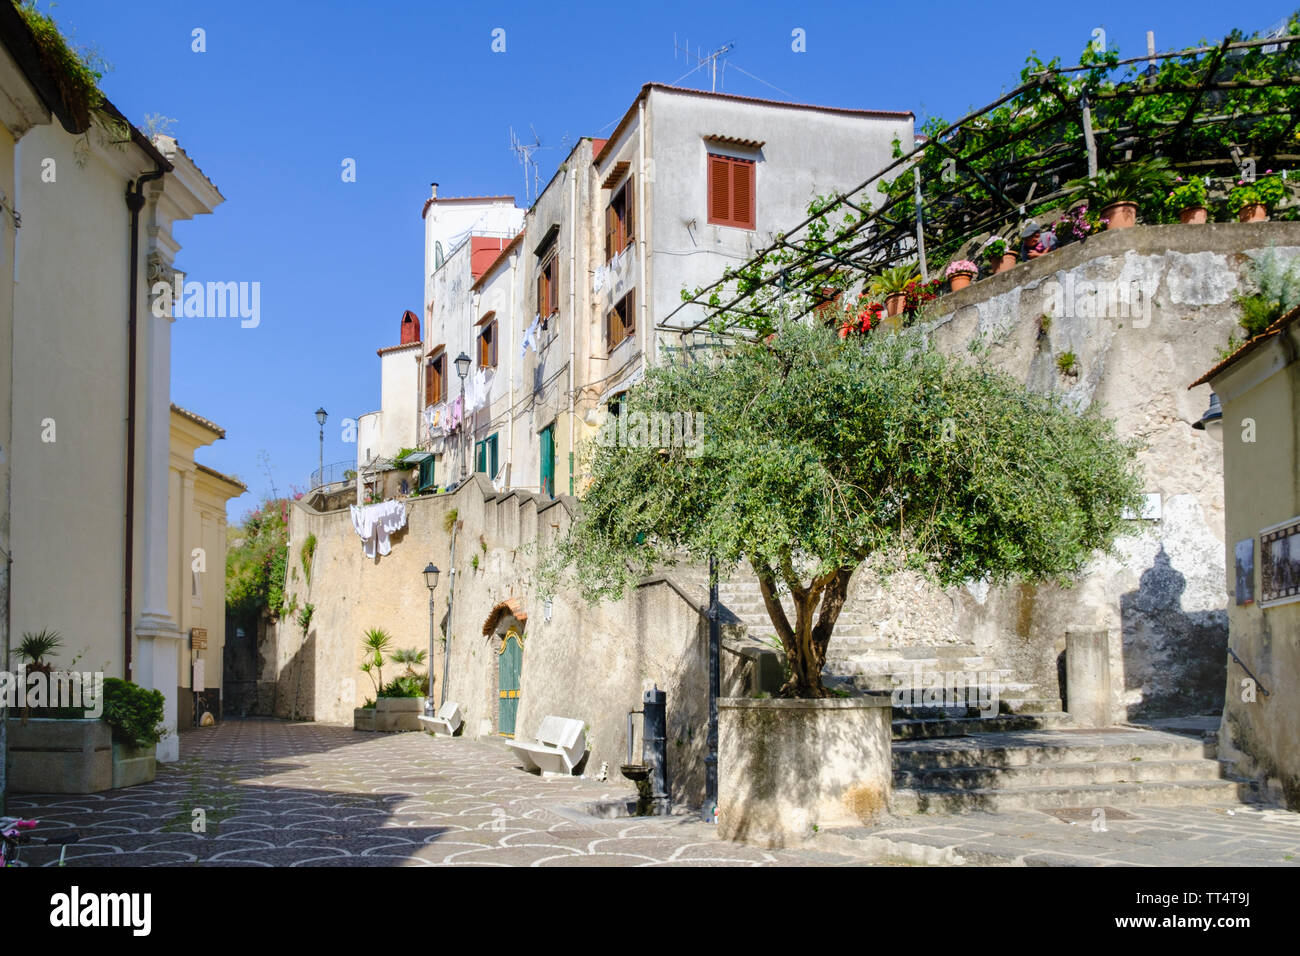 Case in un villaggio italiano in una zona rurale della Campania, Provenza di Salerno nel Sud Italia Foto Stock